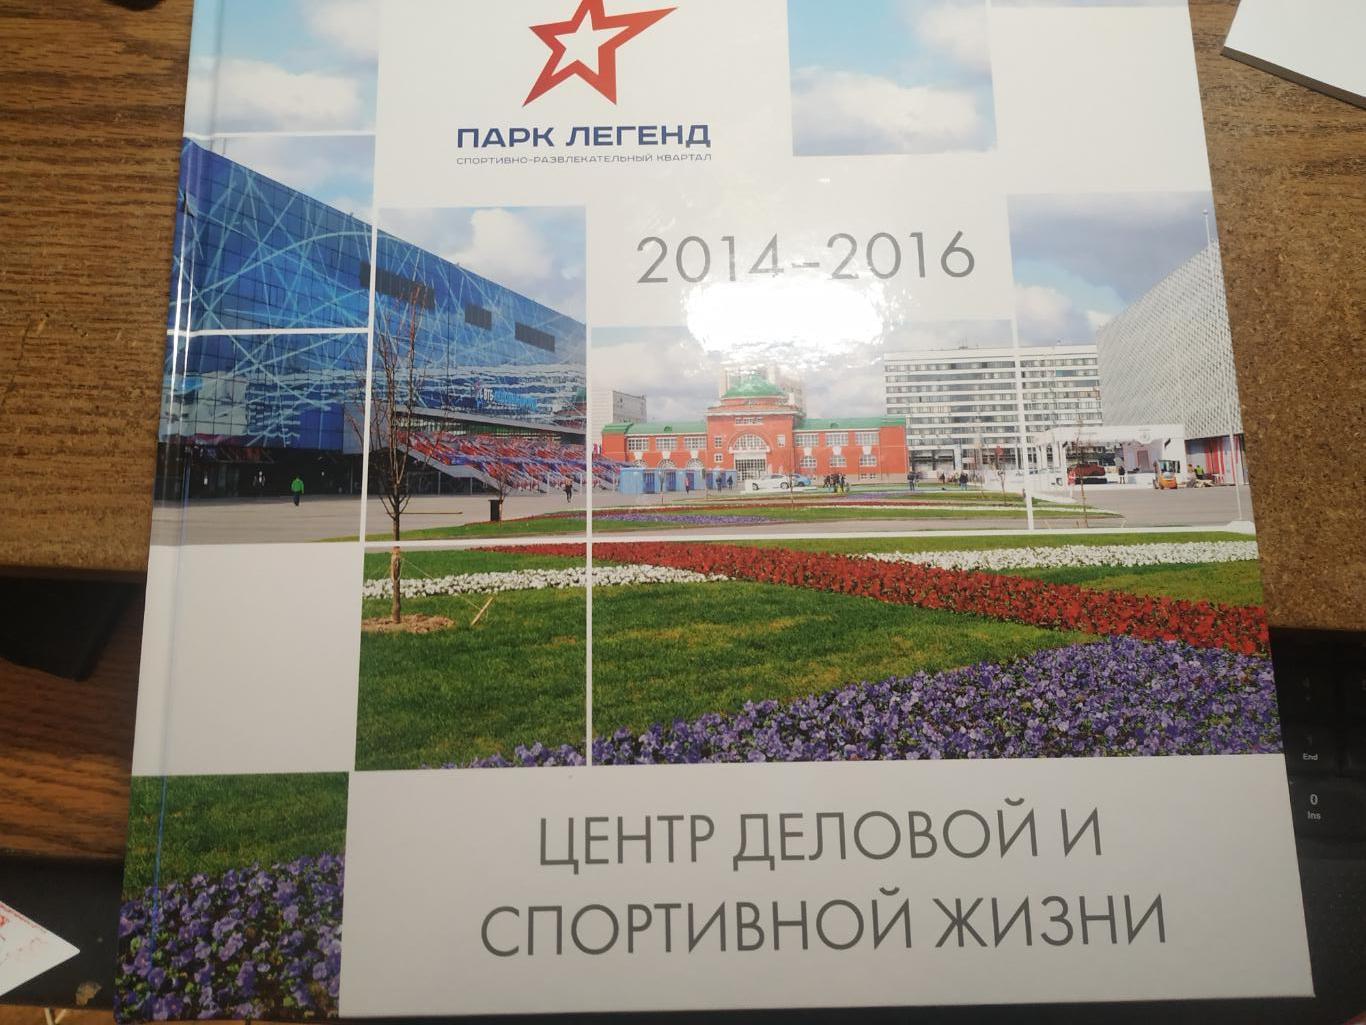 Парк легенд 2014-2016 Центр деловой и спортивной жизни